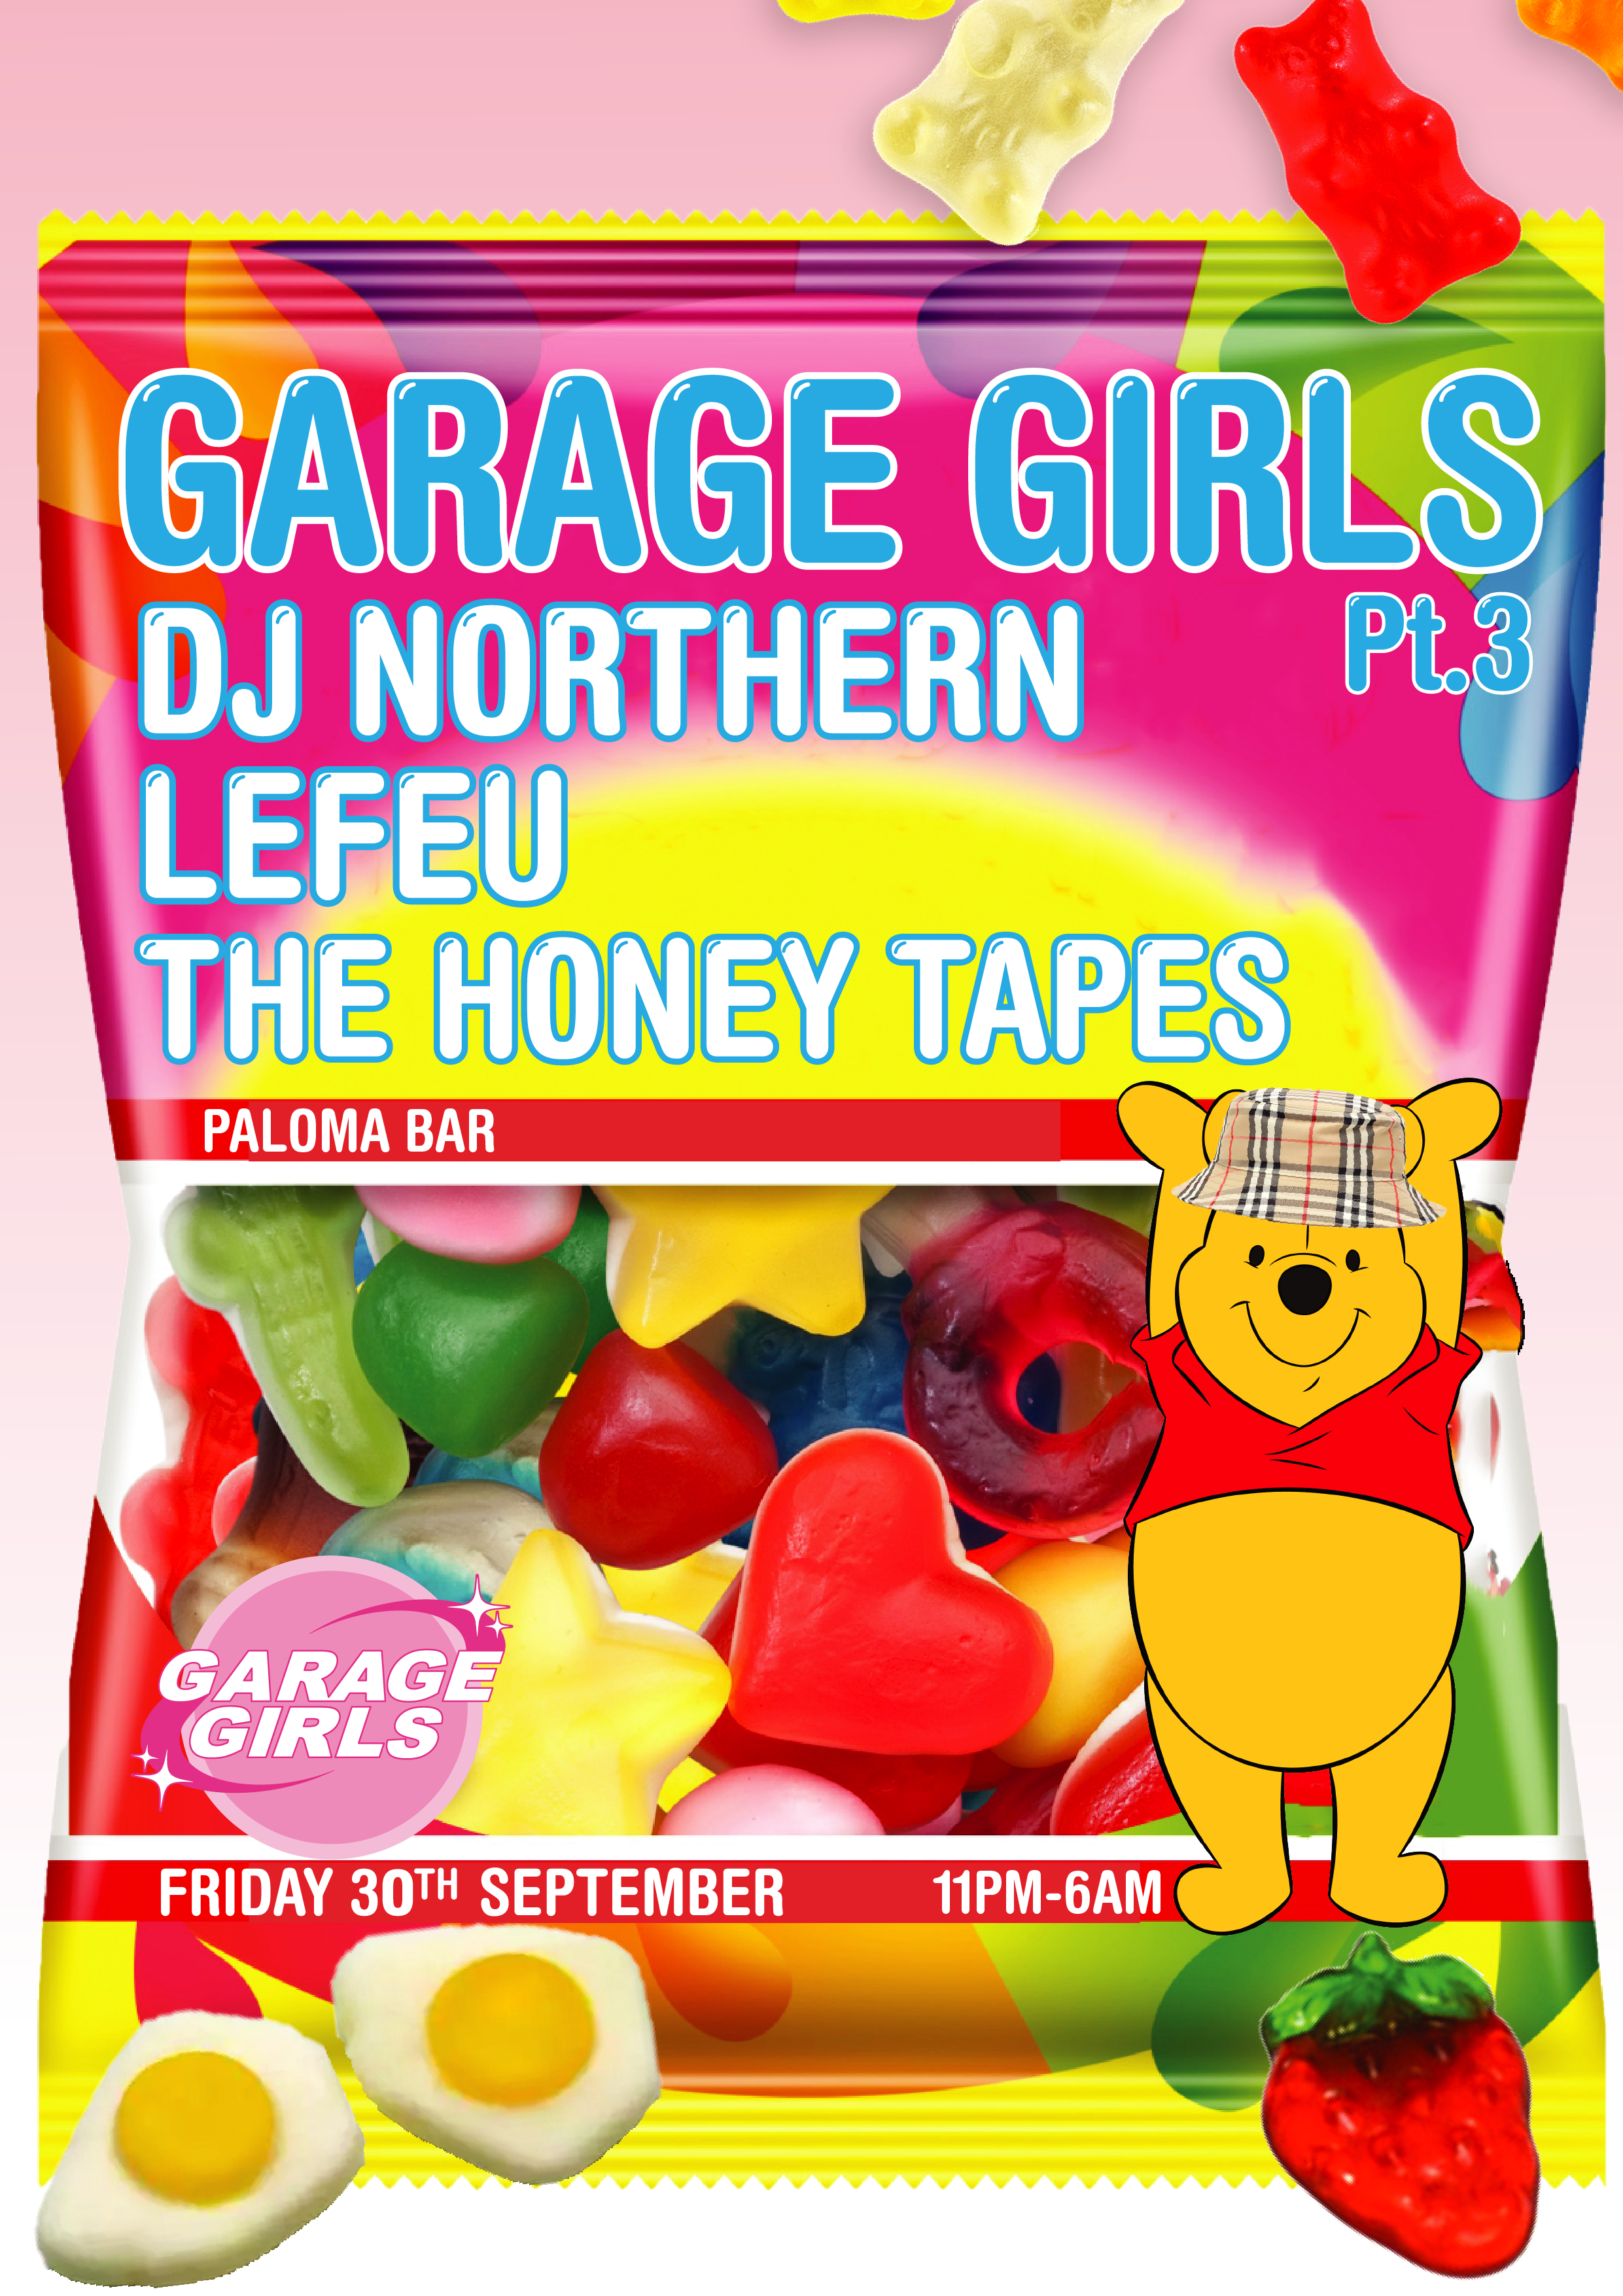 Garage Girls Pt.3 - Flyer back